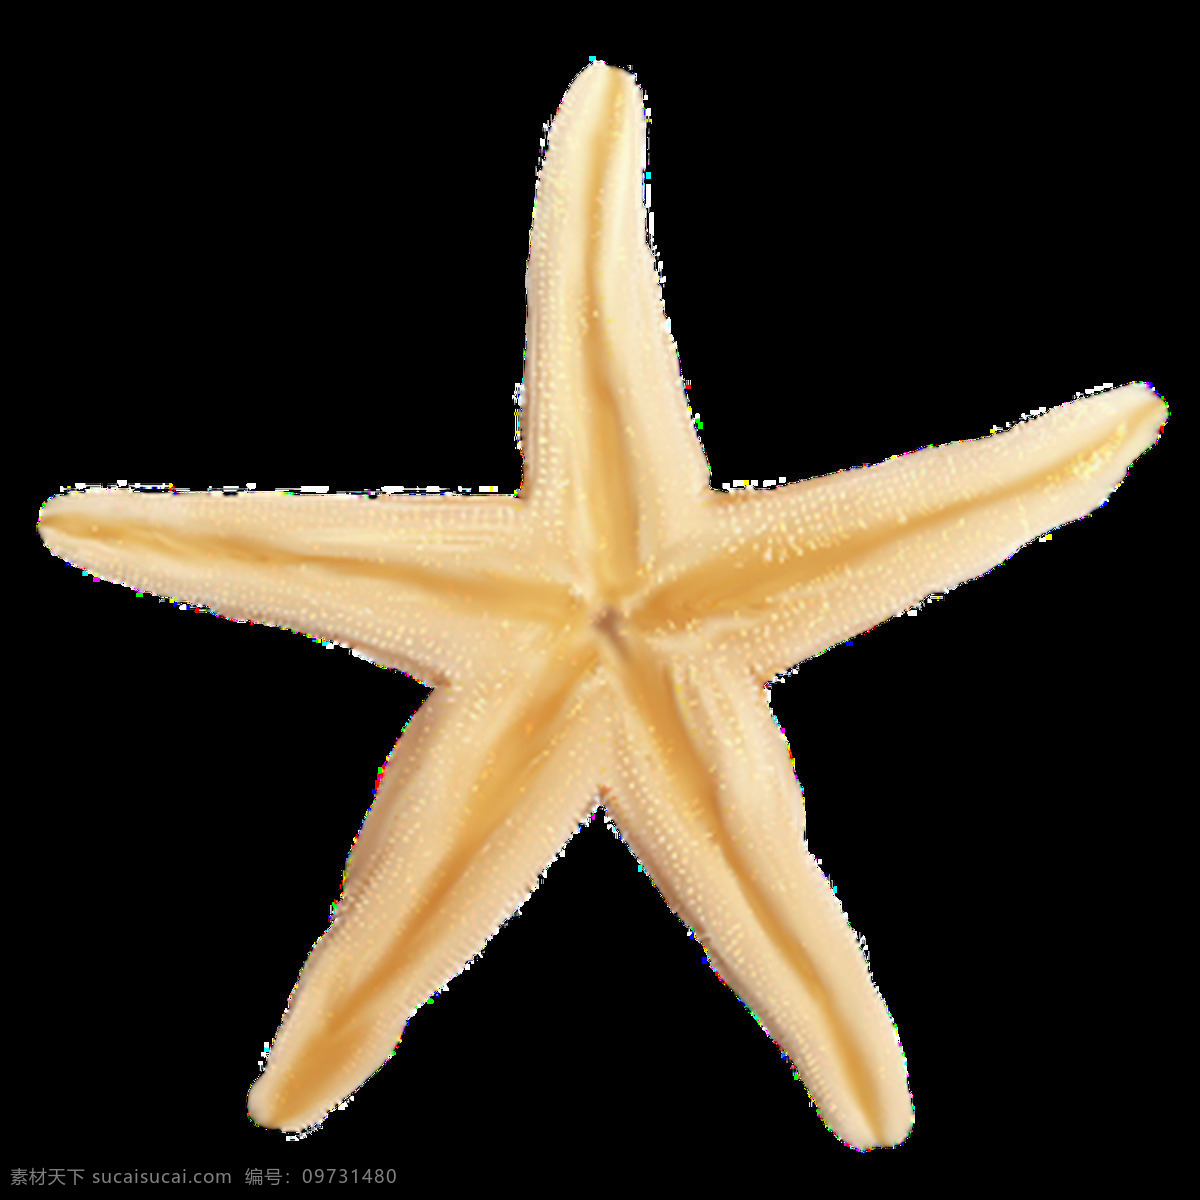 海星图片 海星 星鱼 星星 派大星 星 png图 透明图 免扣图 透明背景 透明底 抠图 生物世界 海洋生物